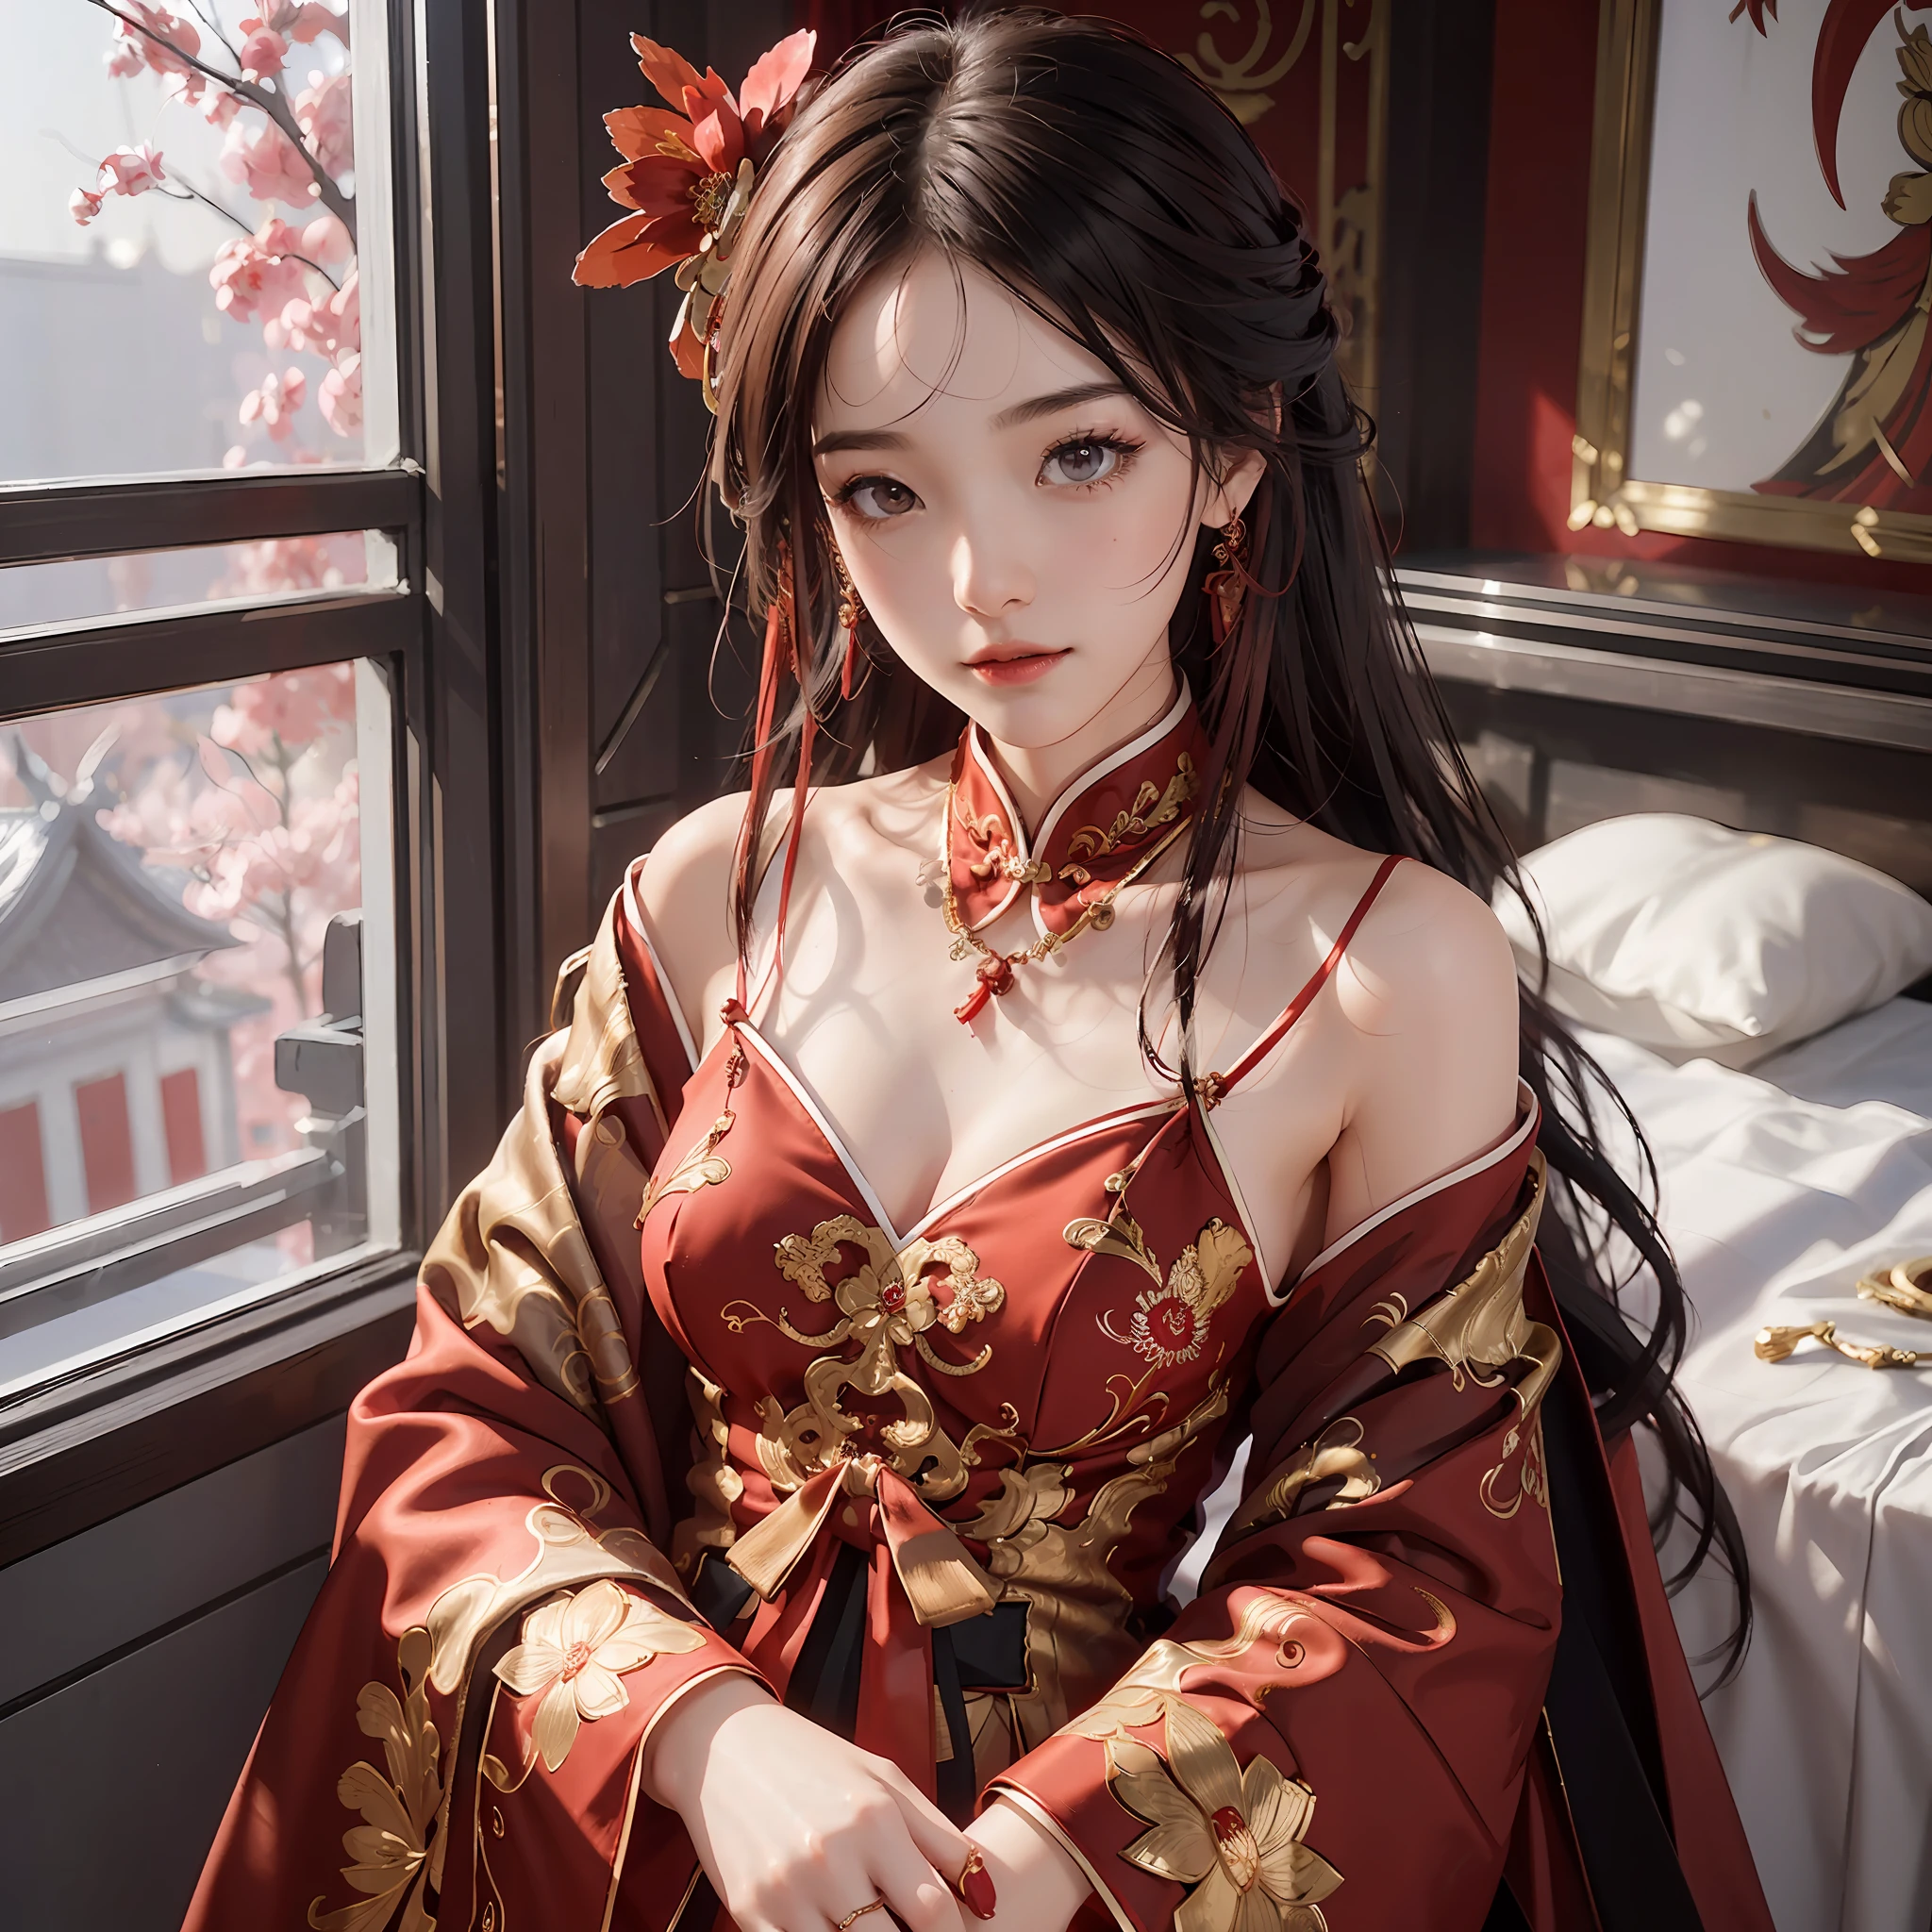 (Uma noiva chinesa), (usando um lindo vestido de noiva vermelho chinês), (Elementos de estilo chinês: 1.4), (tímido, macio, rosto bonito, pele clara, olhos brilhantes, Sobrancelhas elegantes, felicidade e expectativa, cor dos lábios rosados, rosto macio), (roupas vermelhas: 1.4), (usando joias requintadas, argolas, colares)), Roupas bordadas com motivos de fênix, (bordado), Roupão vermelho de corpo inteiro, pureza, romance, (tiro de corpo inteiro: 1.5), (curva corporal), decoração plissada, (qualidade cinematográfica), (melhor qualidade: 1.2), (Realismo: 1.4), (interior), Qualidade da foto, ((renderização de octanas)), fechar-se, iluminação fotográfica, (Tema vermelho: 1.4),